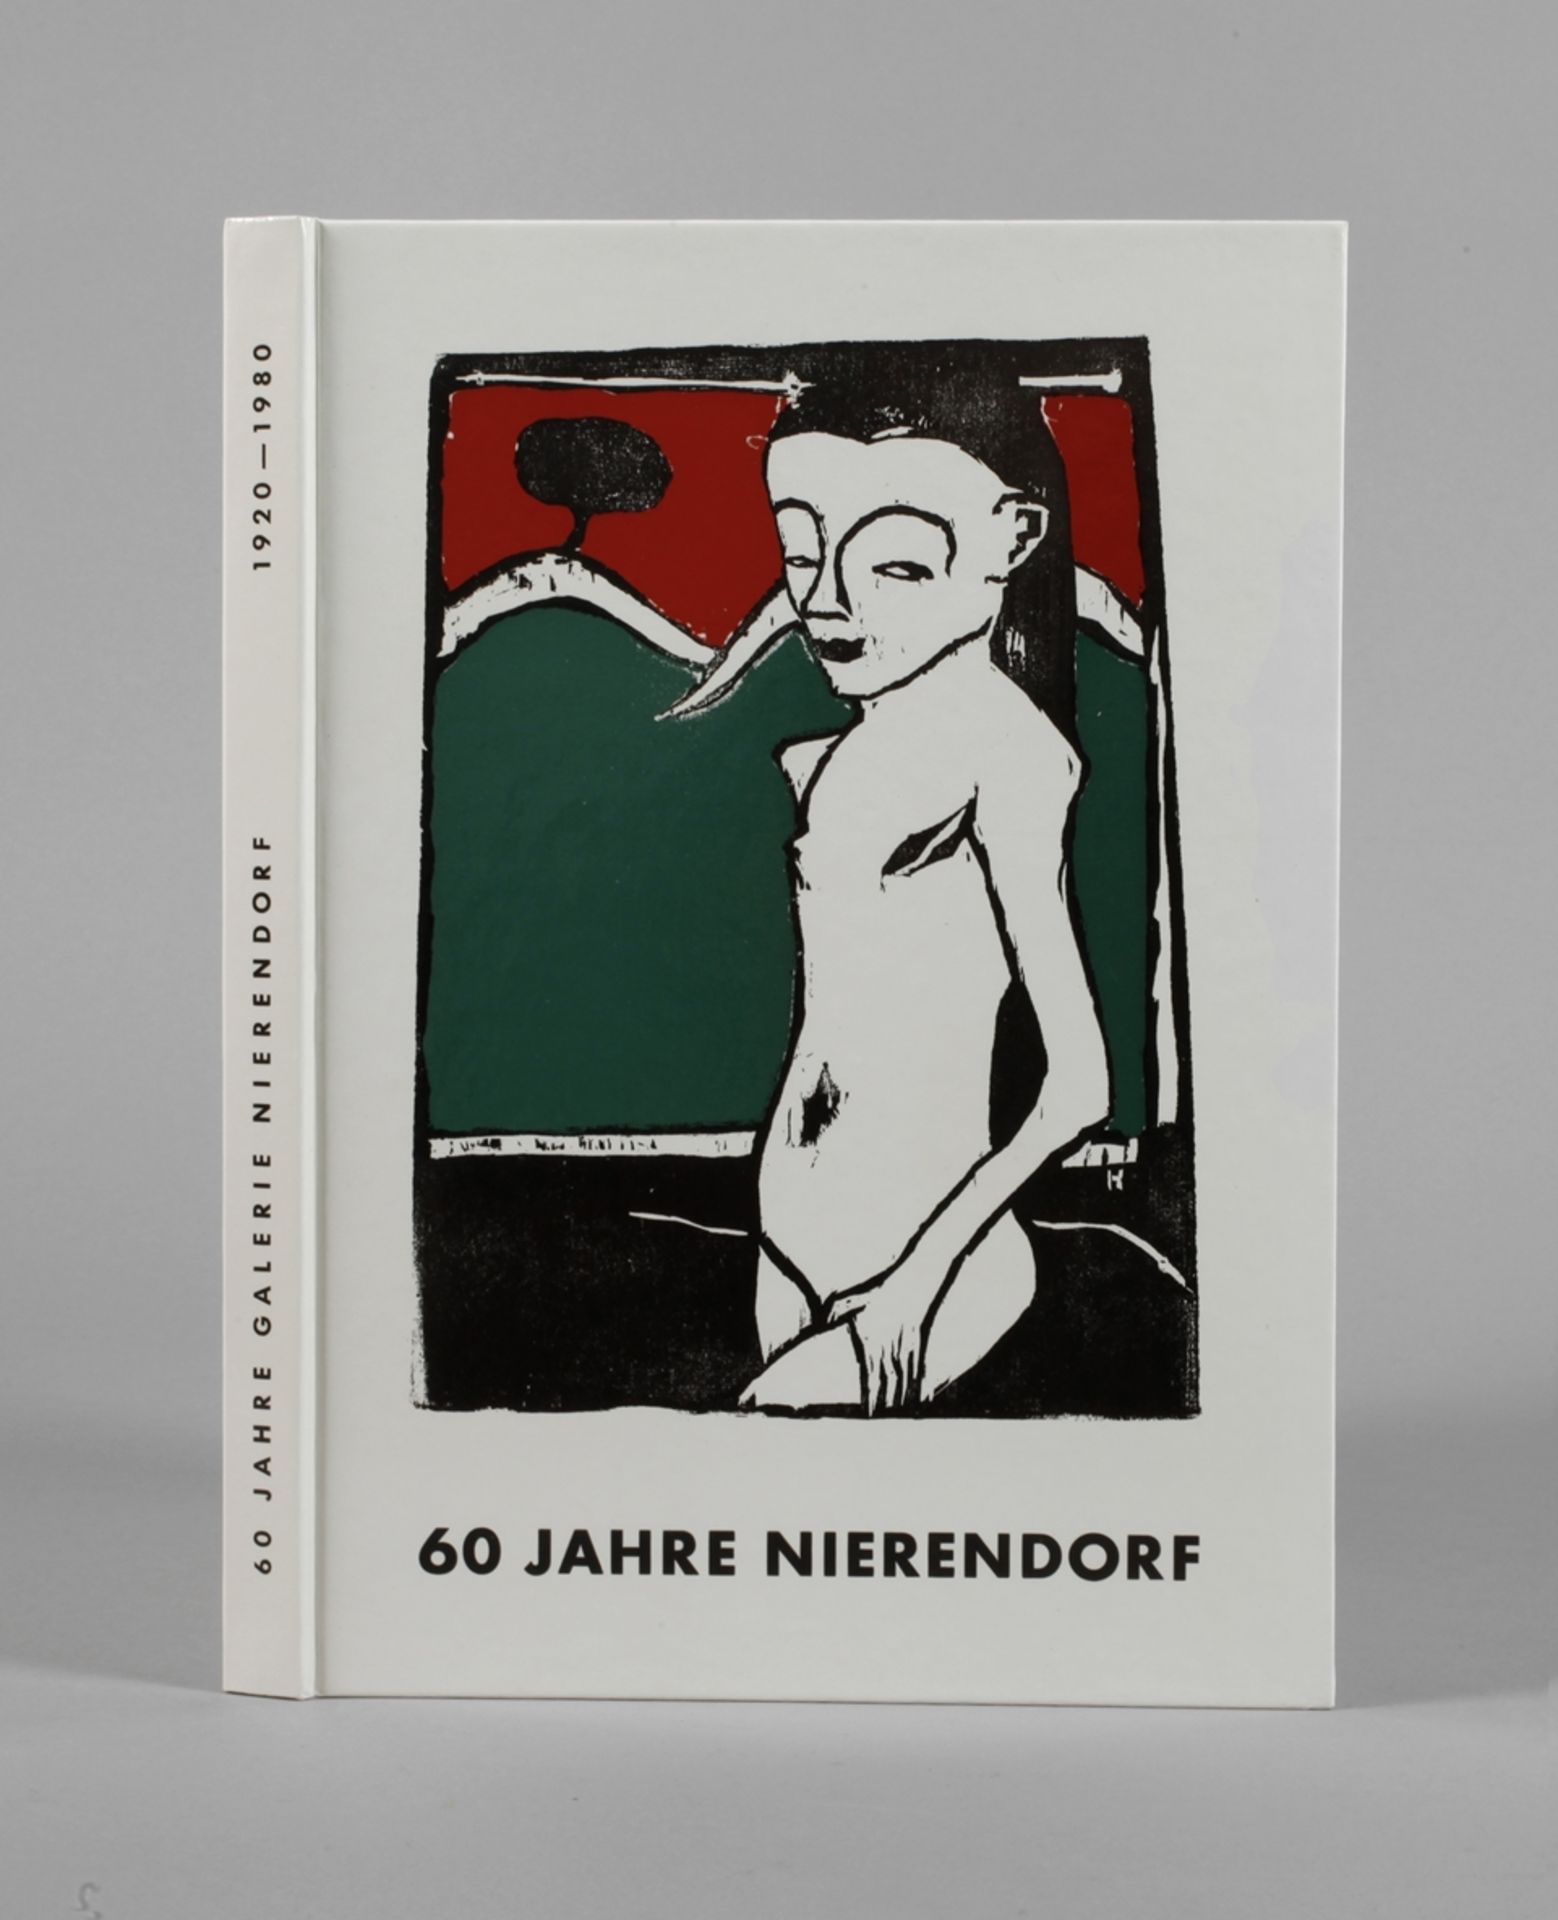 60 years of Galerie Nierendorf